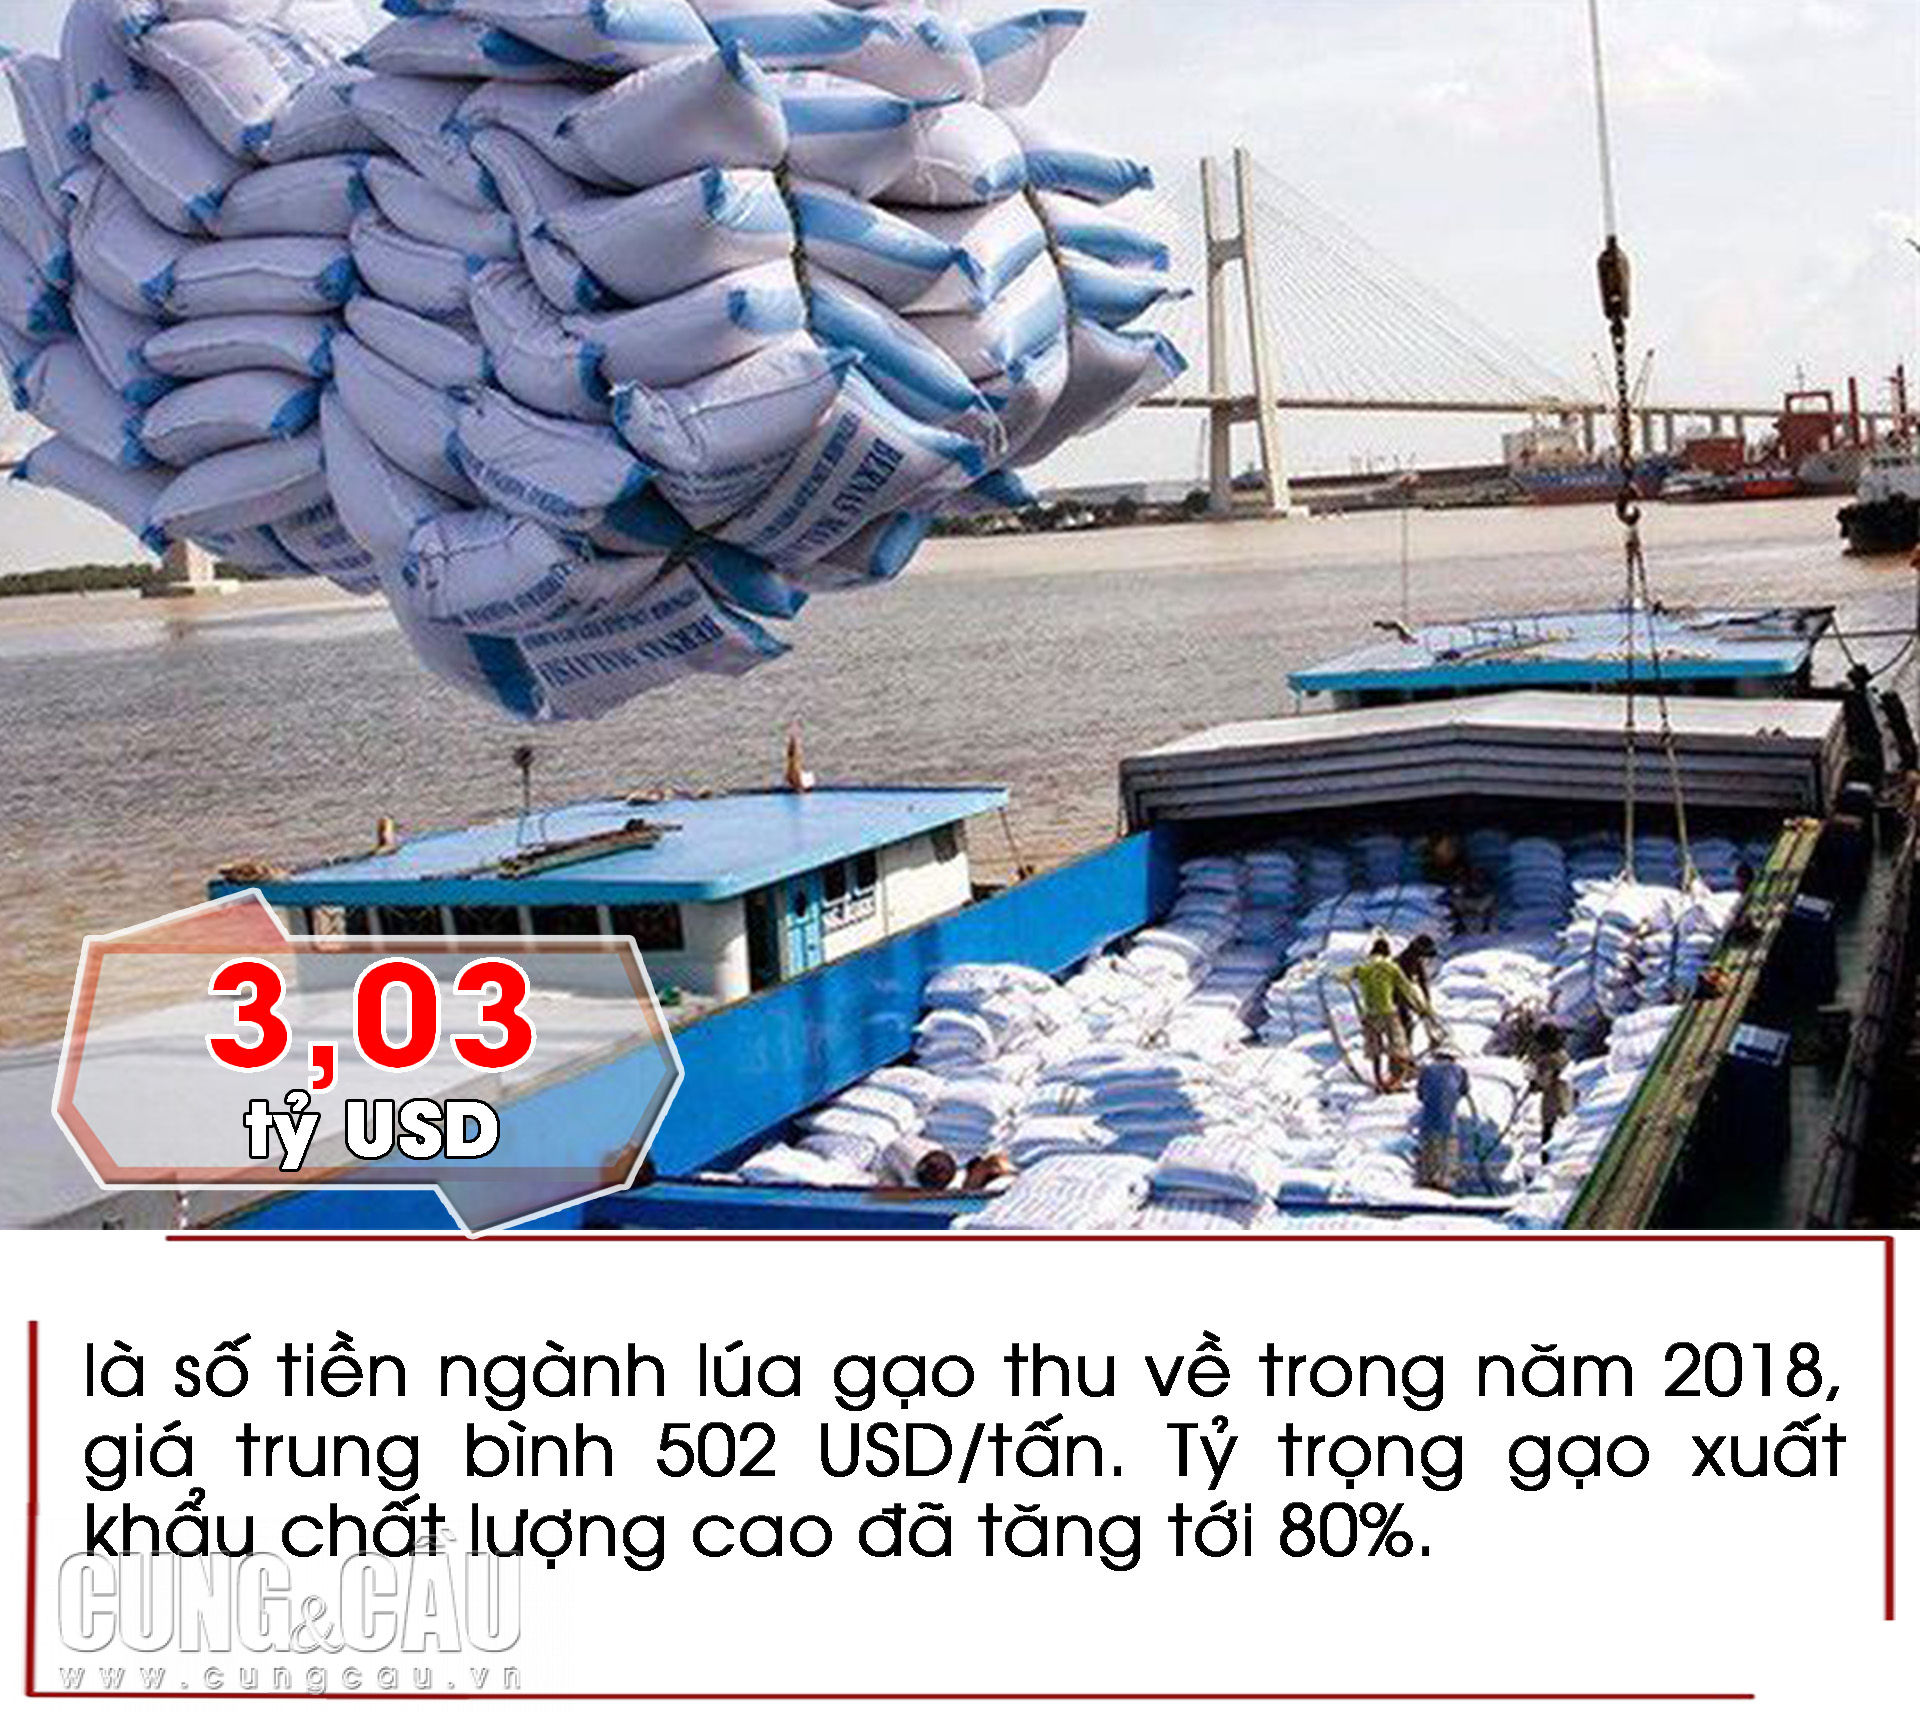 Những con số ấn tượng trong tuần: Nhật Bản là nhà đầu tư lớn nhất vào Việt Nam năm 2018